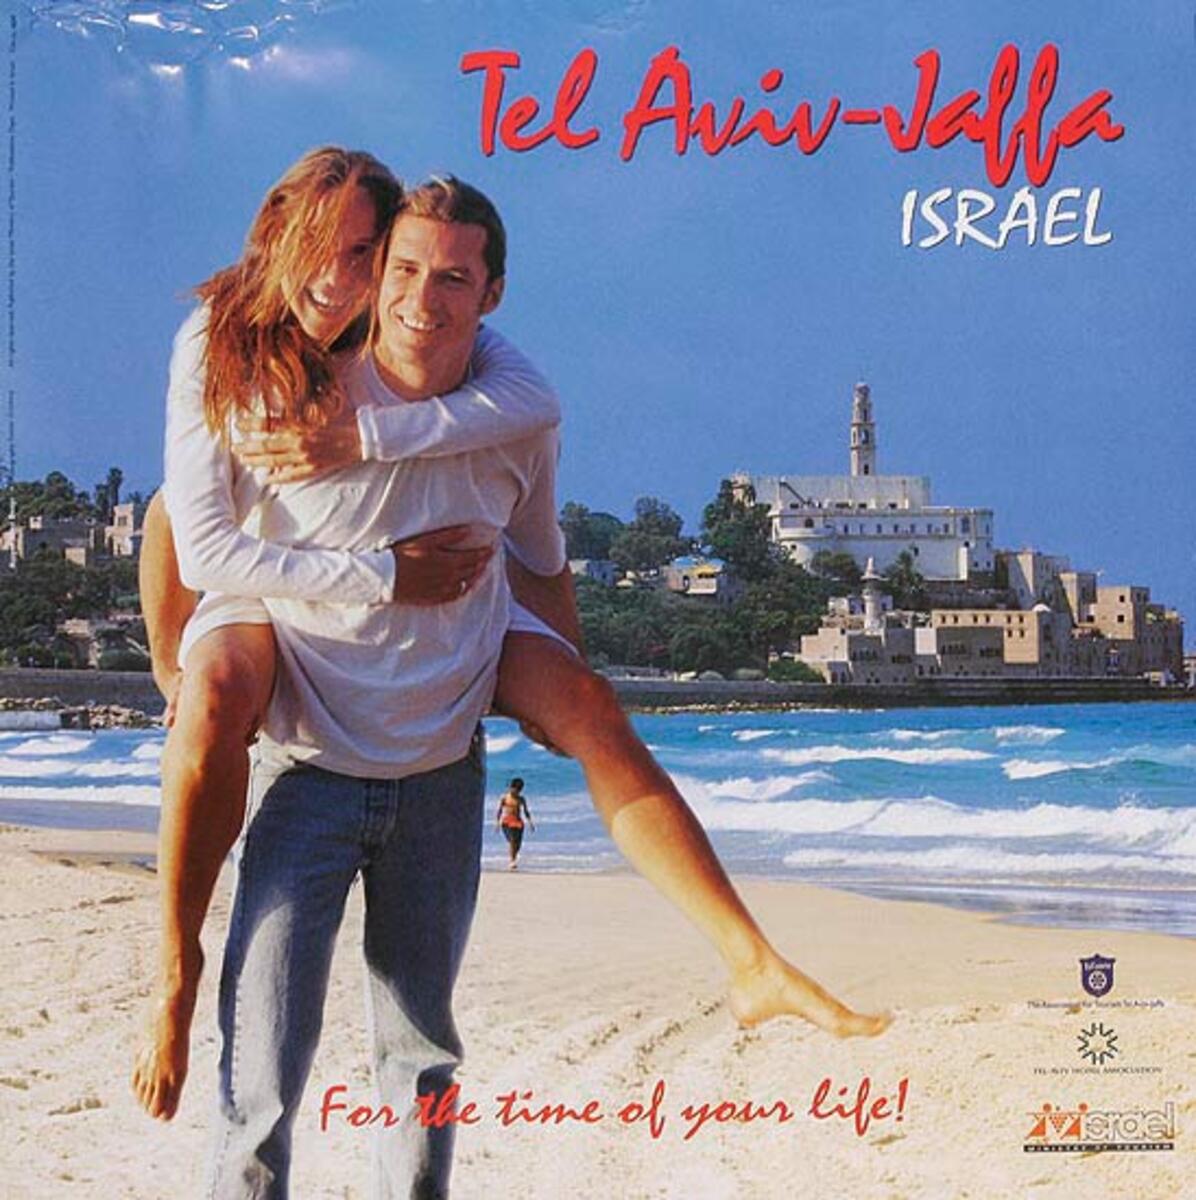 Tel Aviv Jaffa Original Israel Travel Poster 